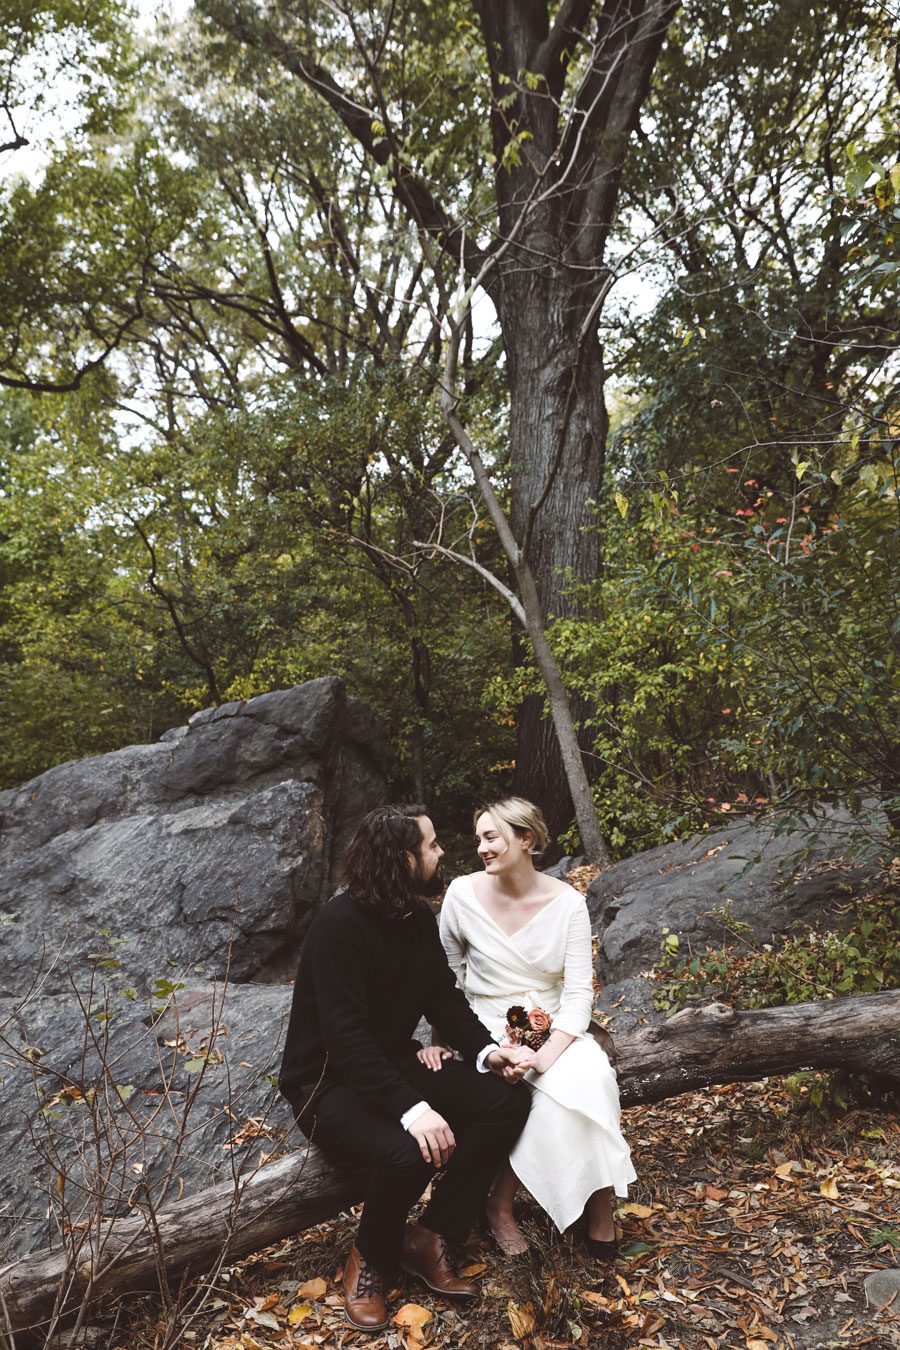 Secret wedding in Central Park